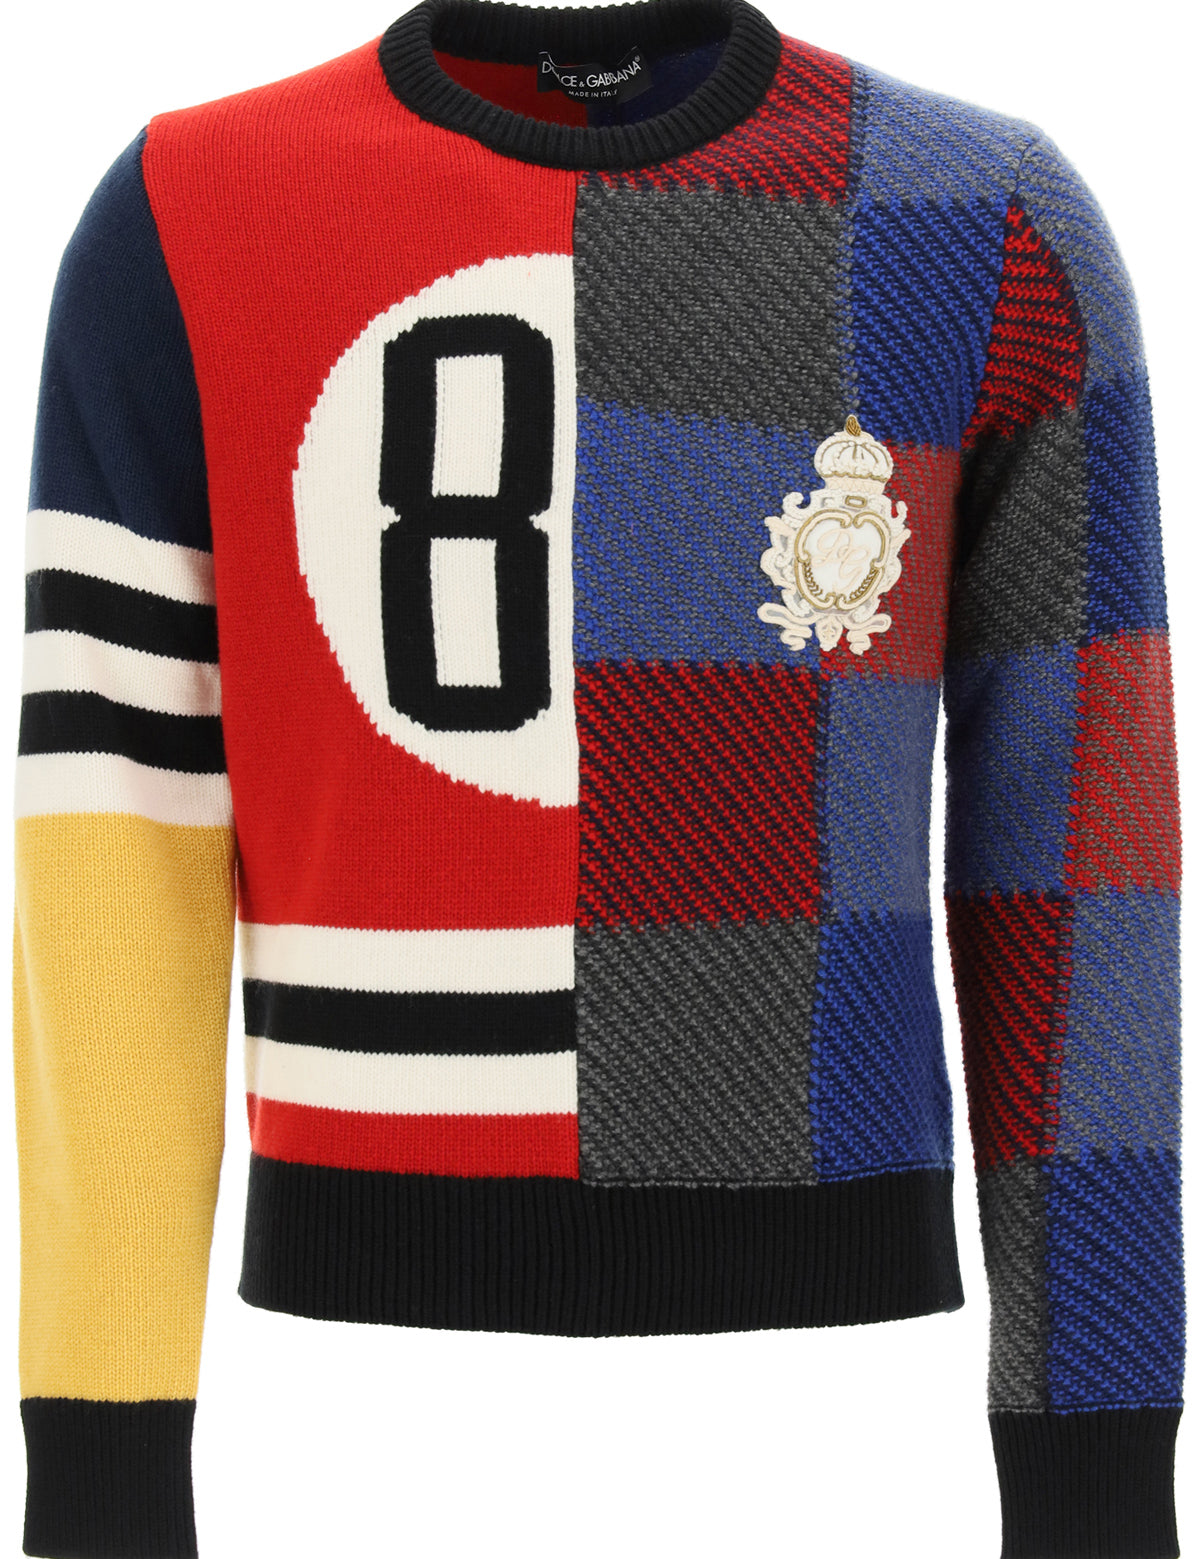 84-sweater-in-multicolor-wool.jpg